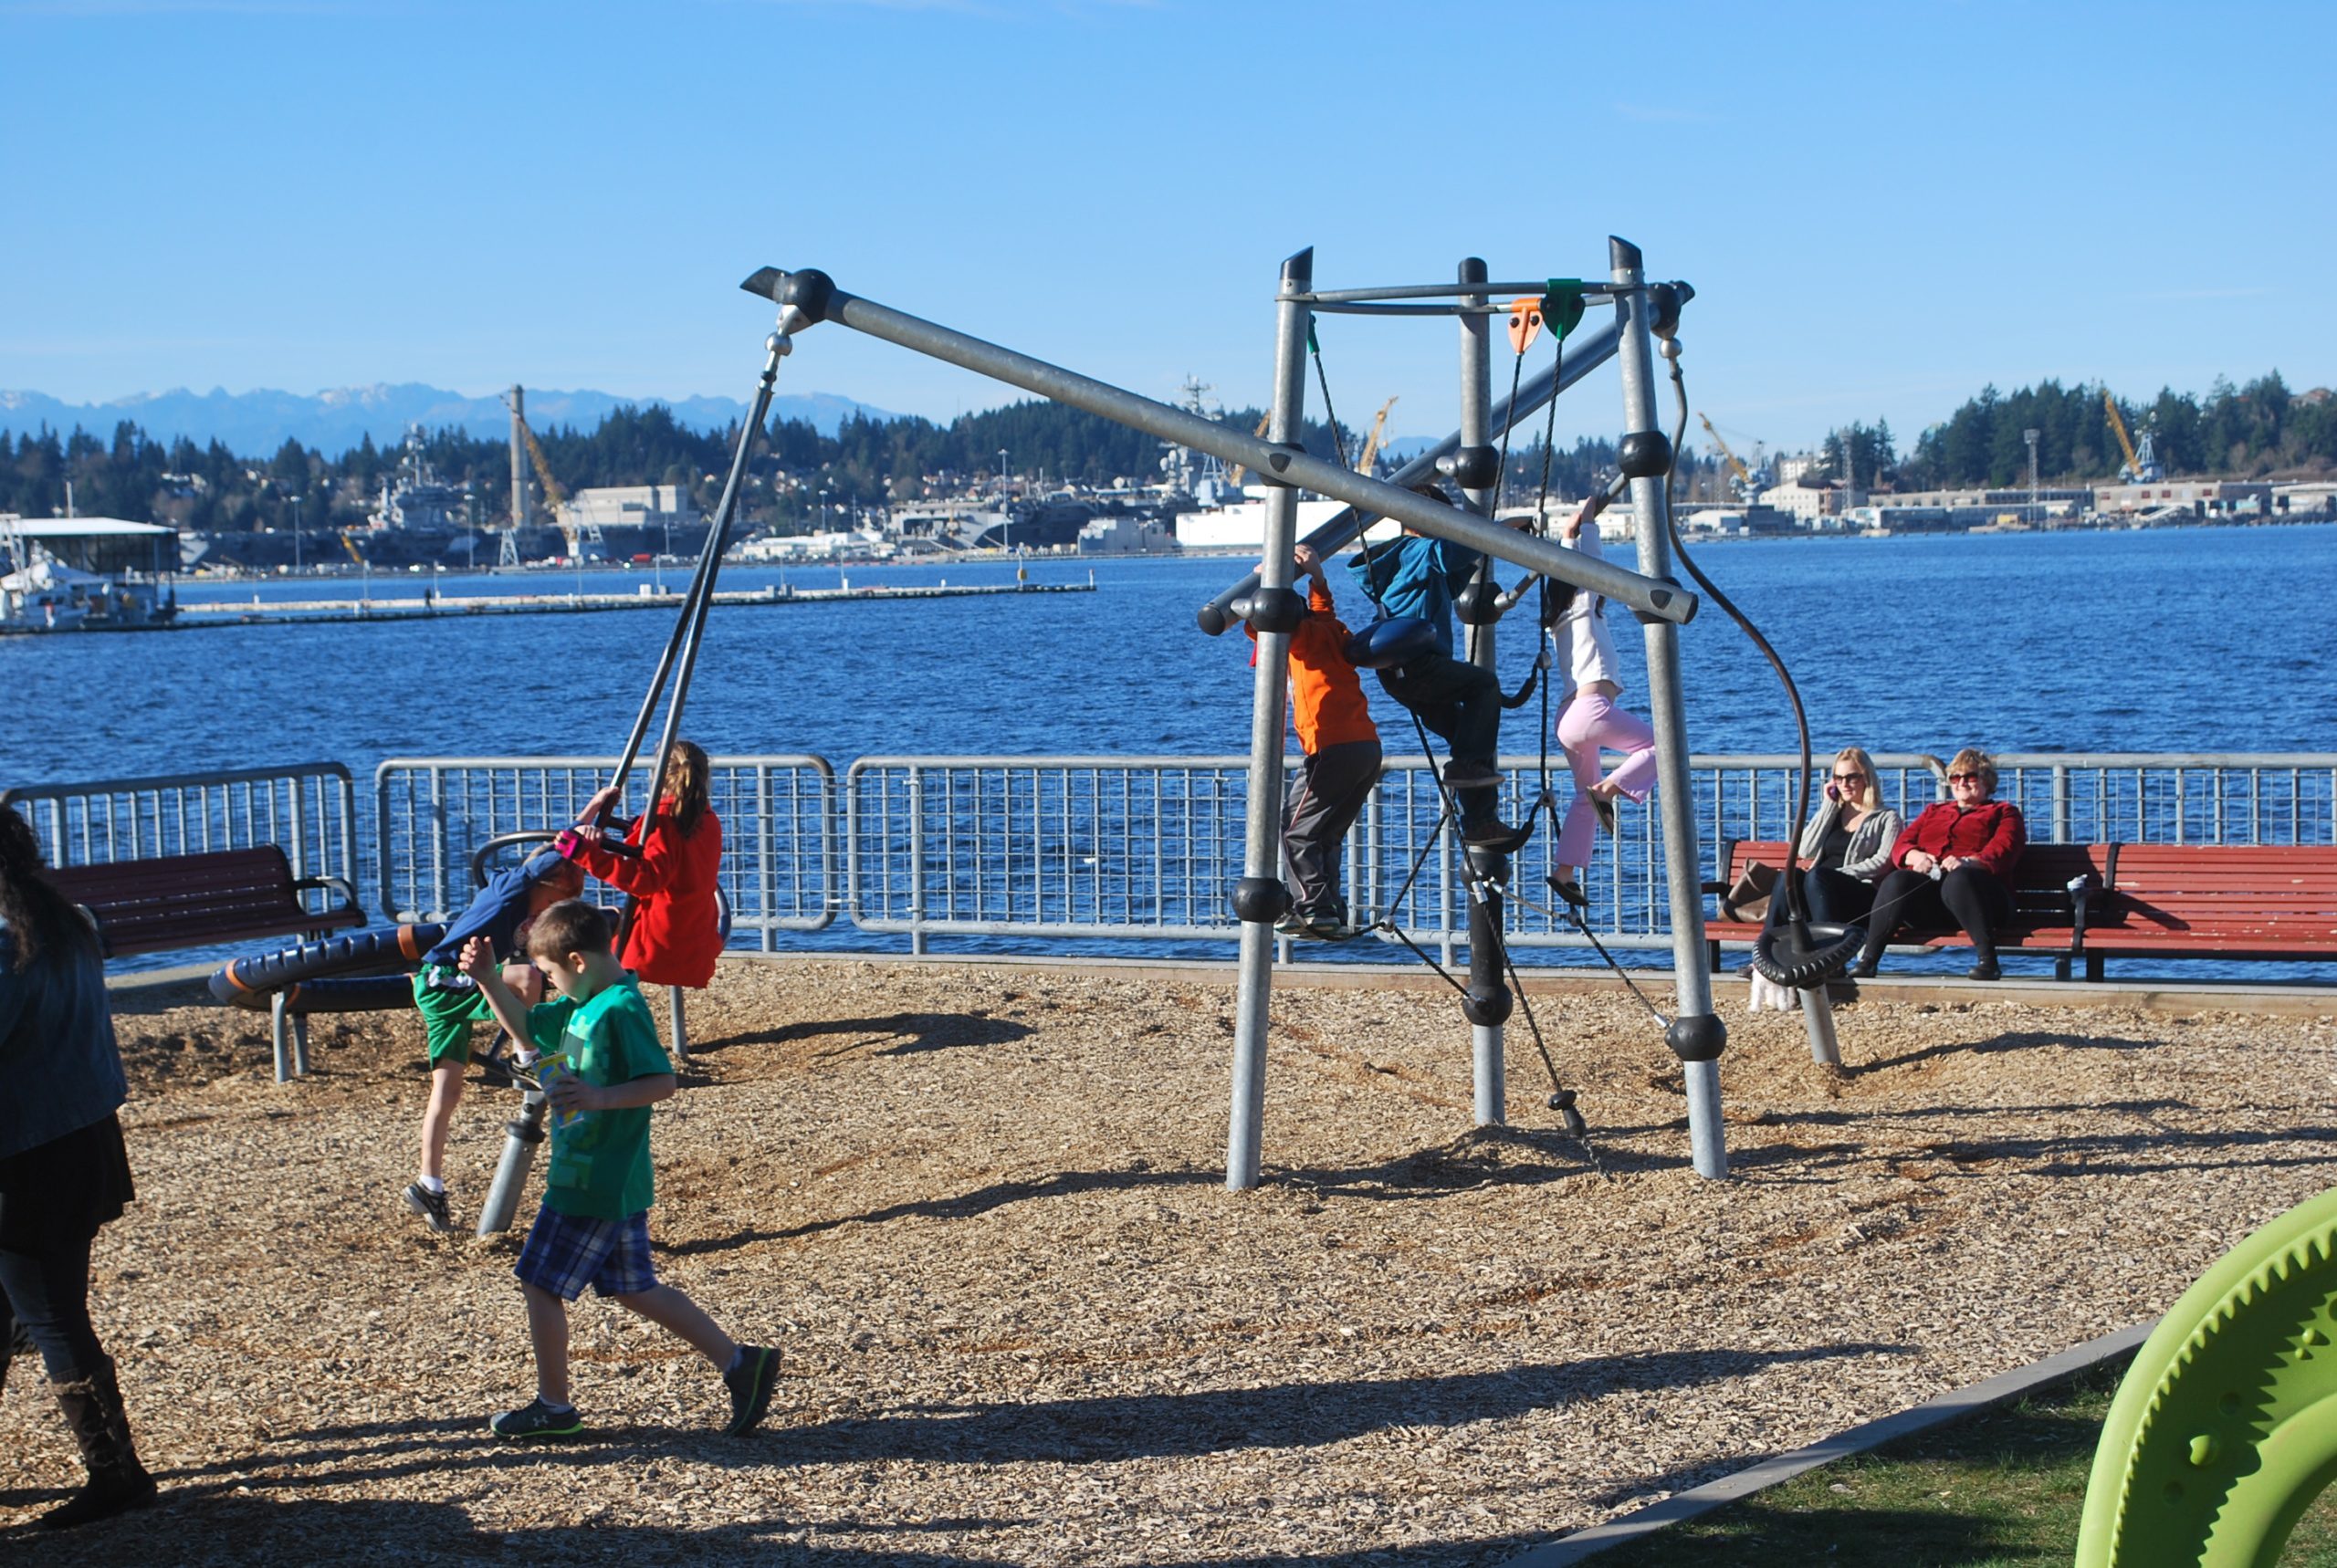 Children’s Marina Playground Park